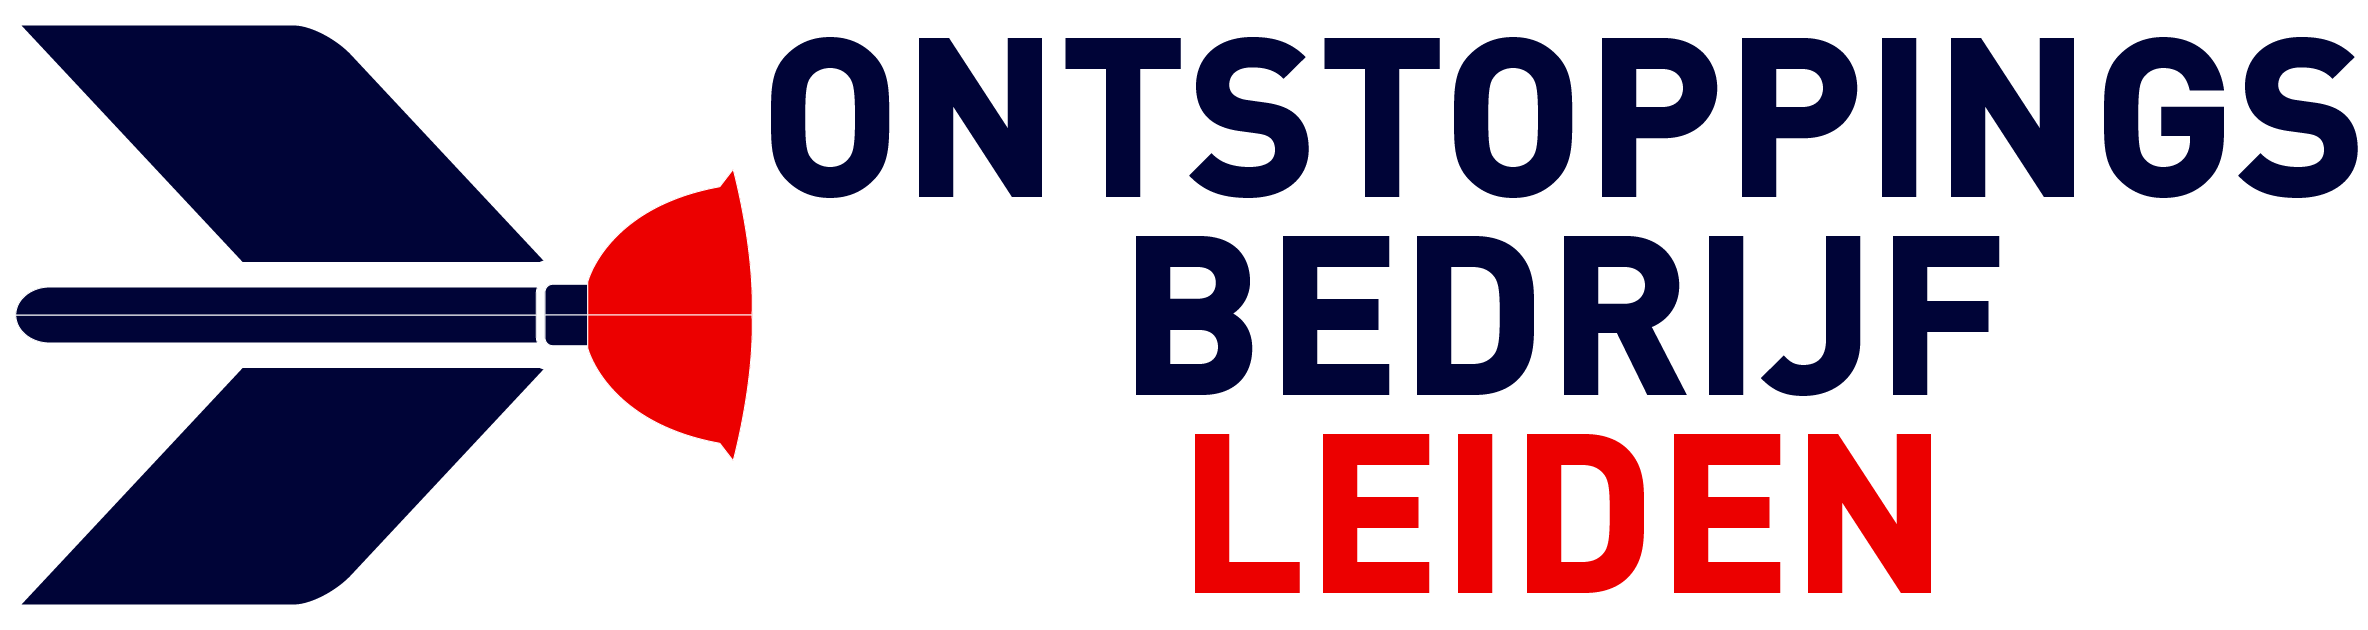 Ontstoppingsbedrijf Leiden logo